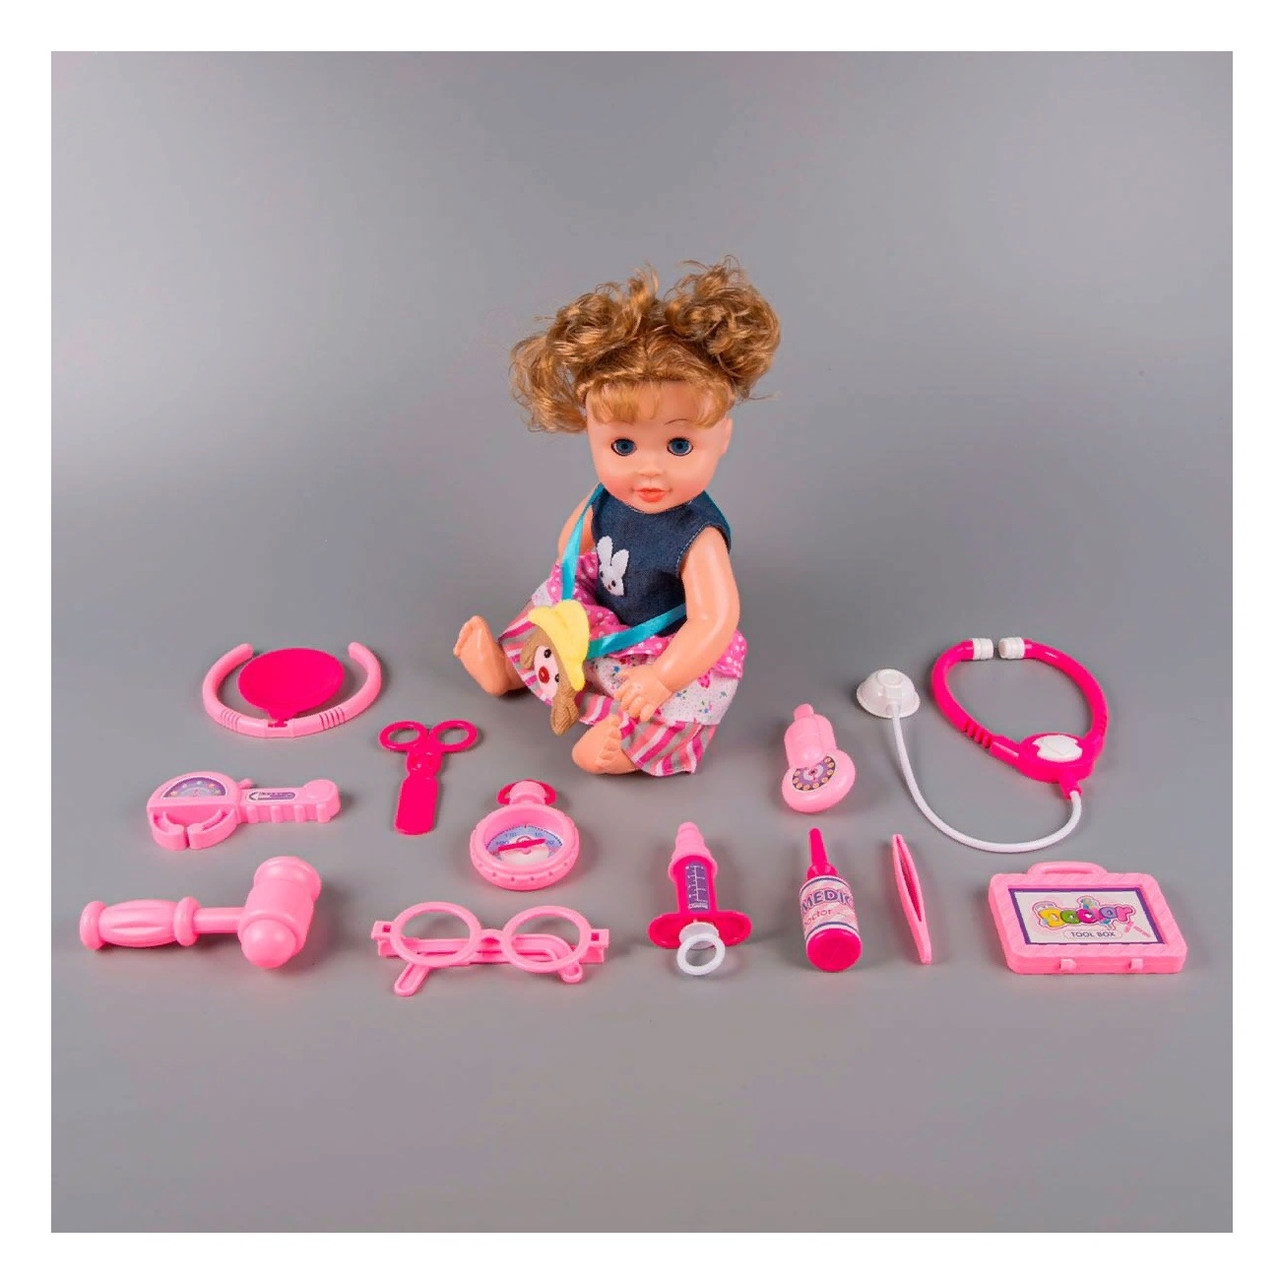 Игровой набор Baby кукла и набор доктора 1212407, фото 1